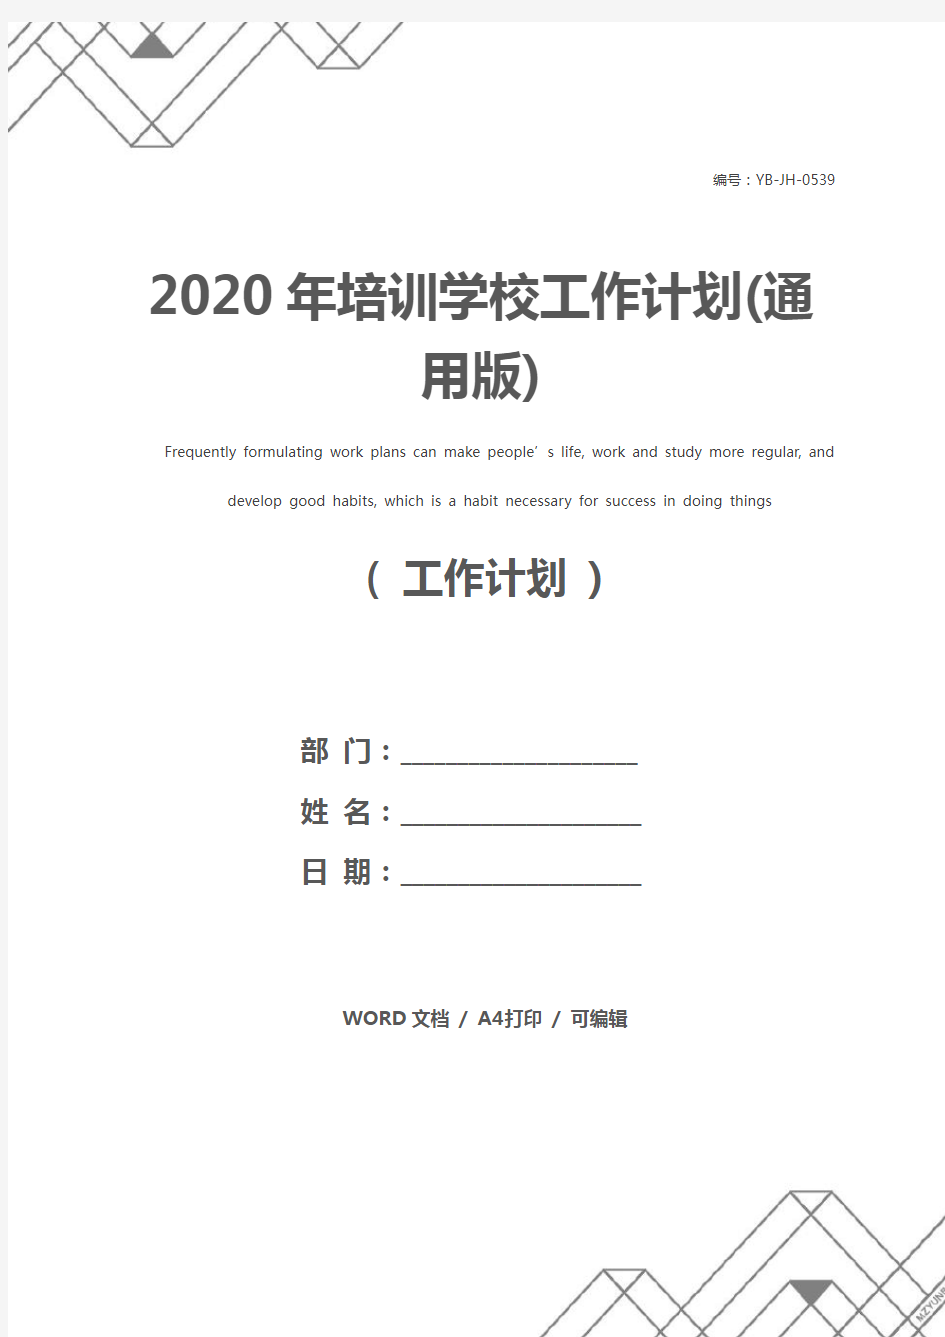 2020年培训学校工作计划(通用版)